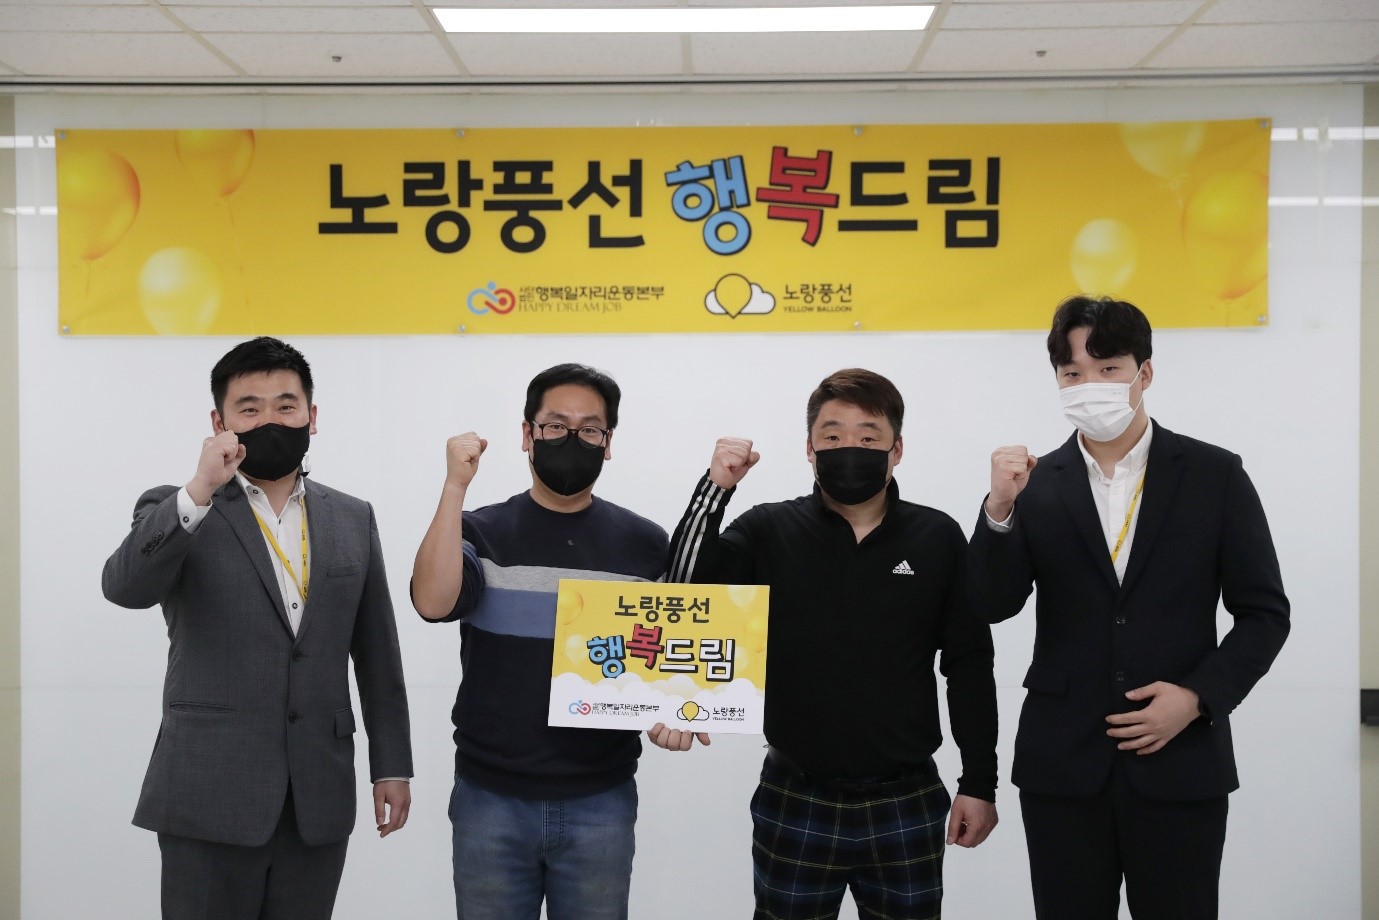 [머니투데이] 노랑풍선, 장애인 일자리 창출 위한 PC기부 '행복드림' 개최